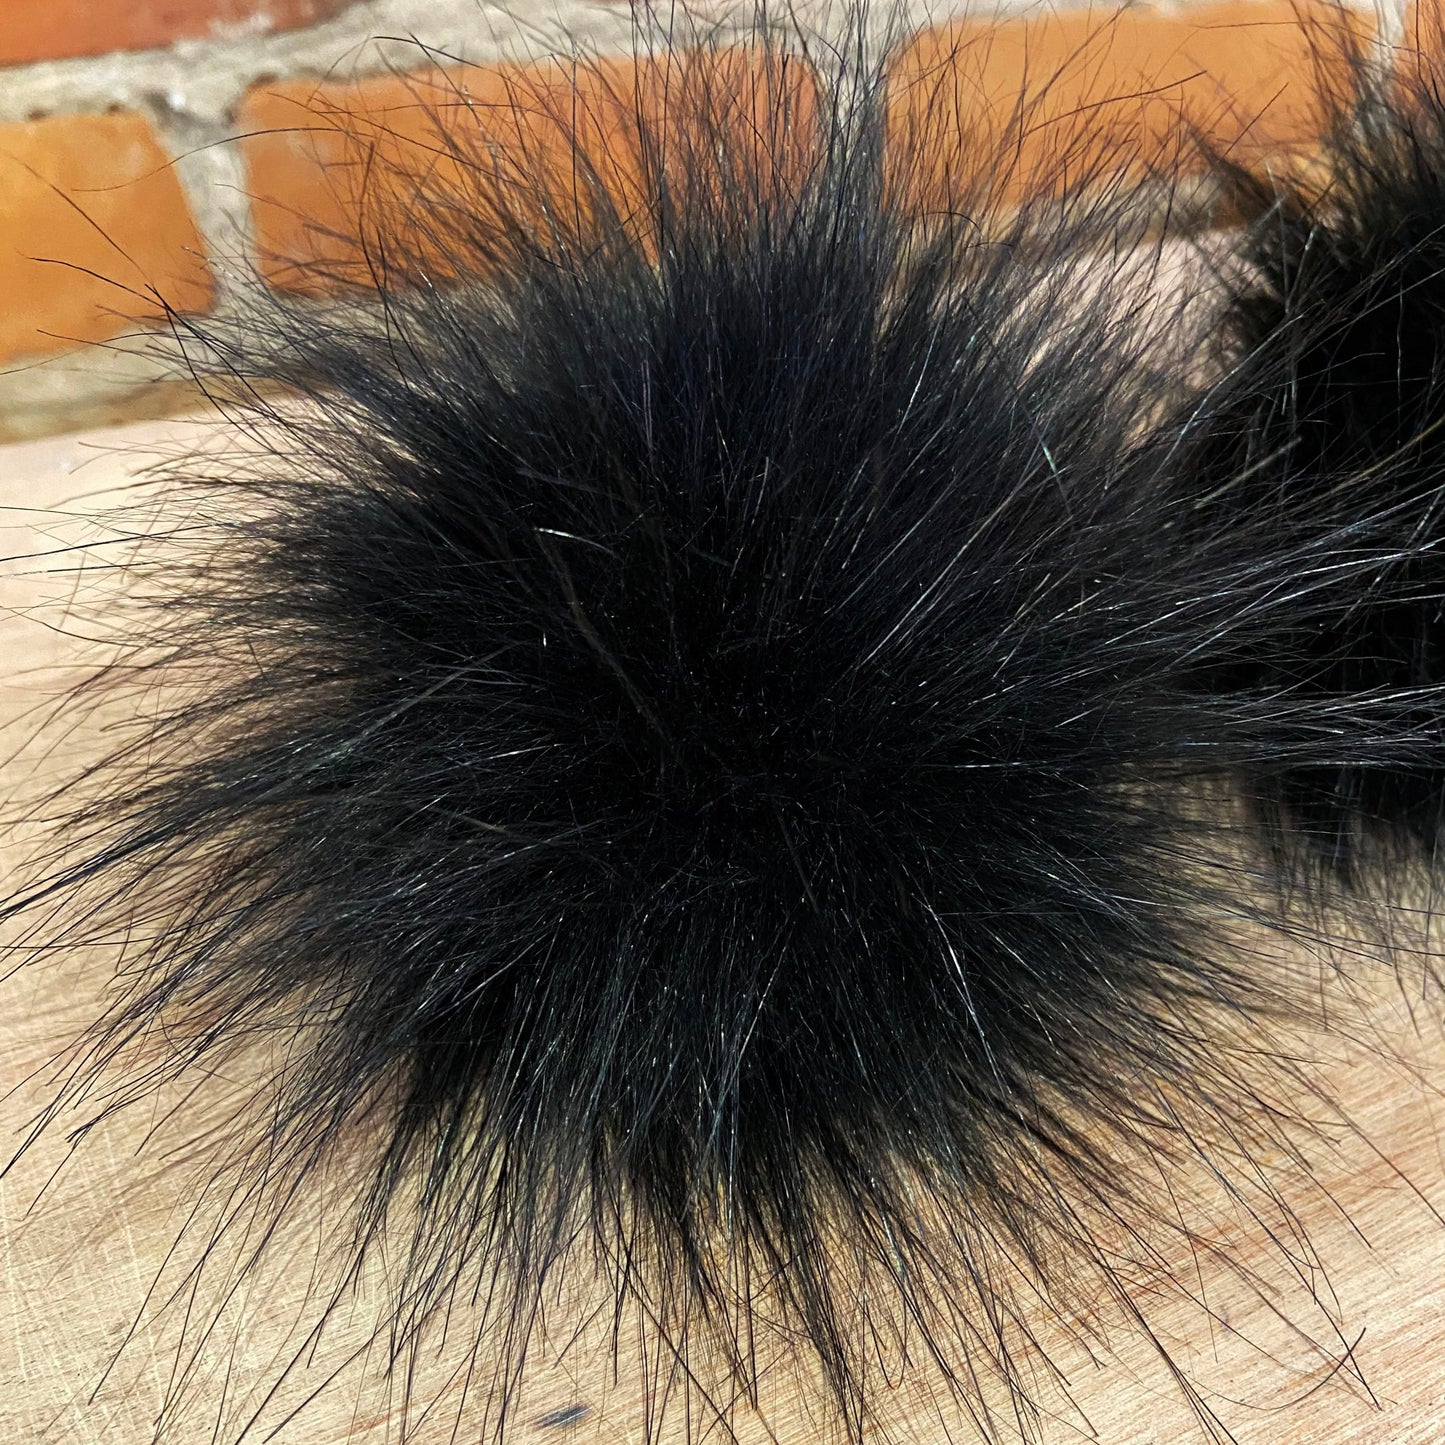 Small Jet Black Wispy Faux Fur Pom Pom for Knit Hats